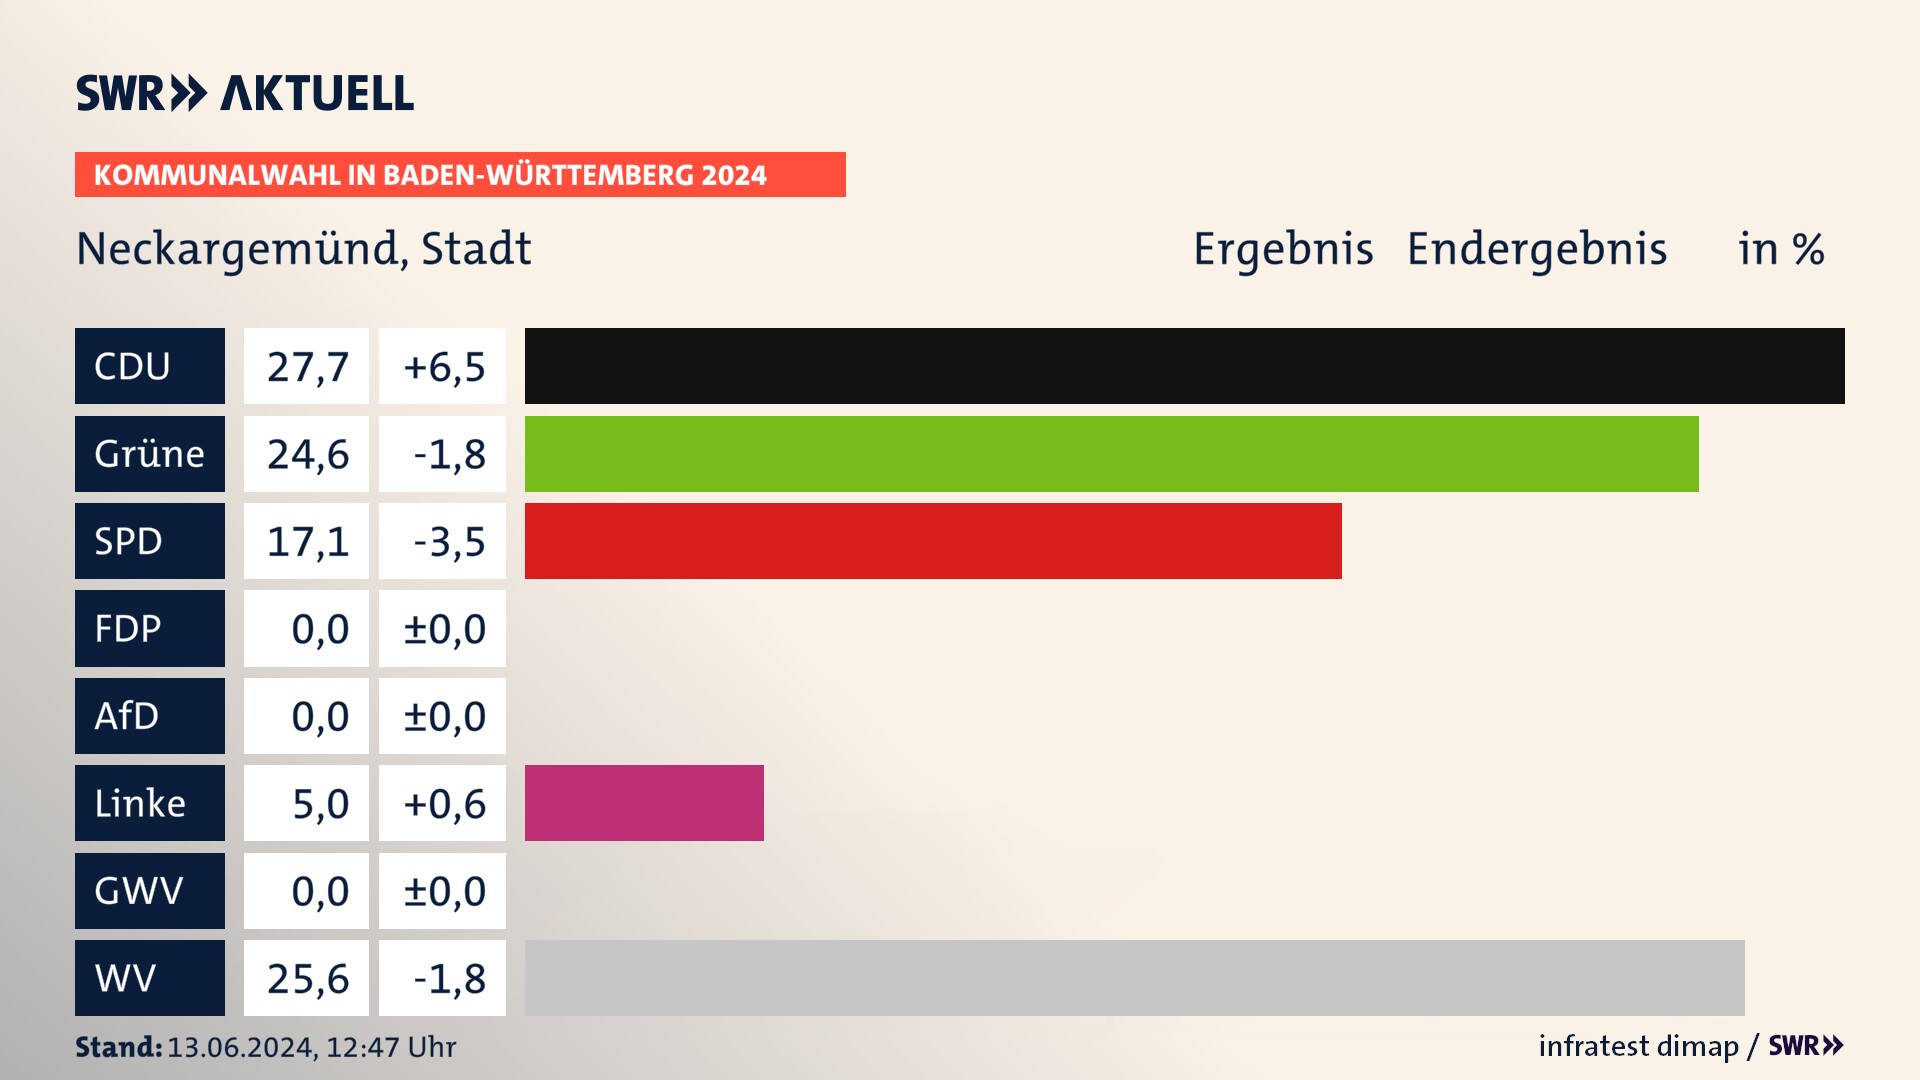 Kommunalwahl 2024 Endergebnis Zweitstimme für Neckargemünd. In Neckargemünd, Stadt erzielt die CDU 27,7 Prozent der gültigen  Stimmen. Die Grünen landen bei 24,6 Prozent. Die SPD erreicht 17,1 Prozent. Die Linke kommt auf 5,0 Prozent. Die Wählervereinigungen landen bei 25,6 Prozent.